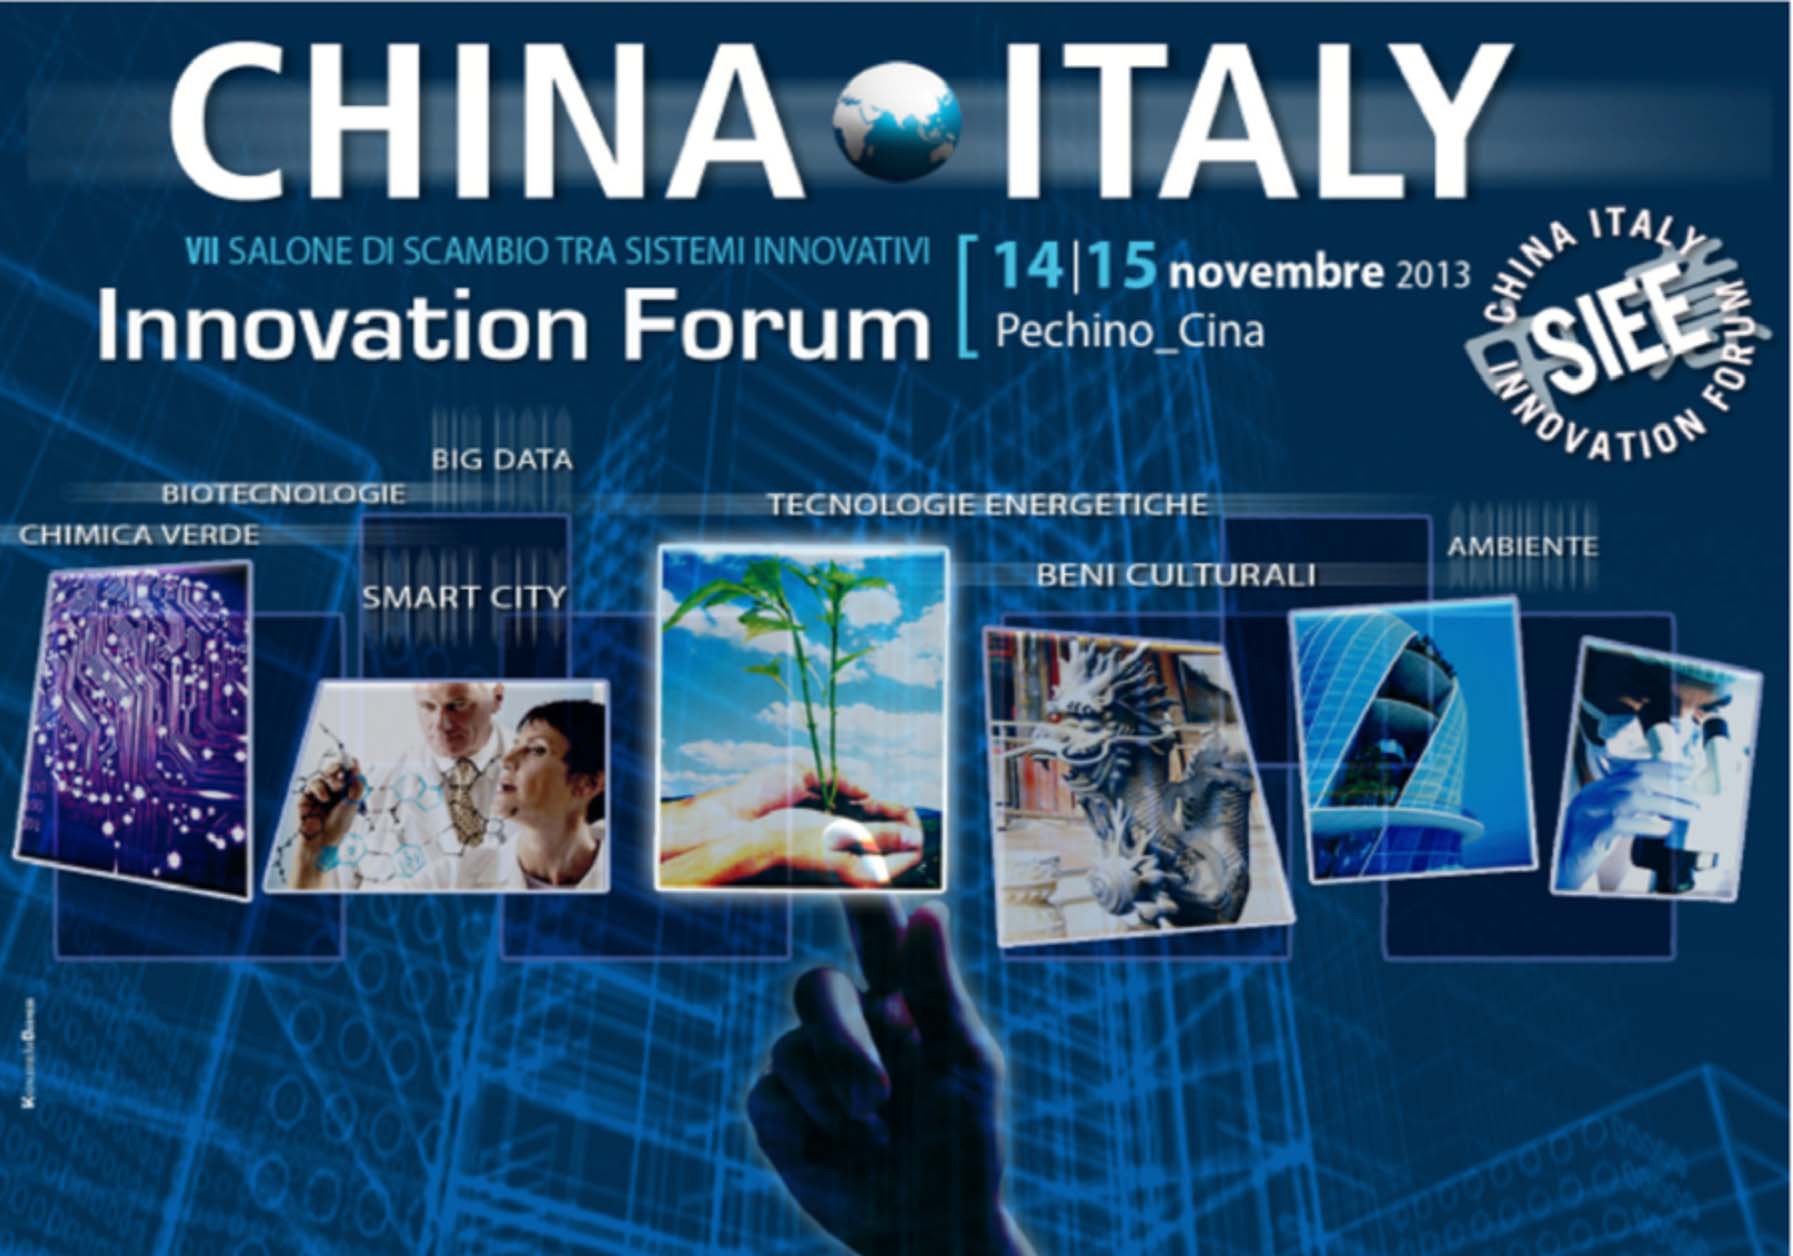 China Italy Innovation Forum